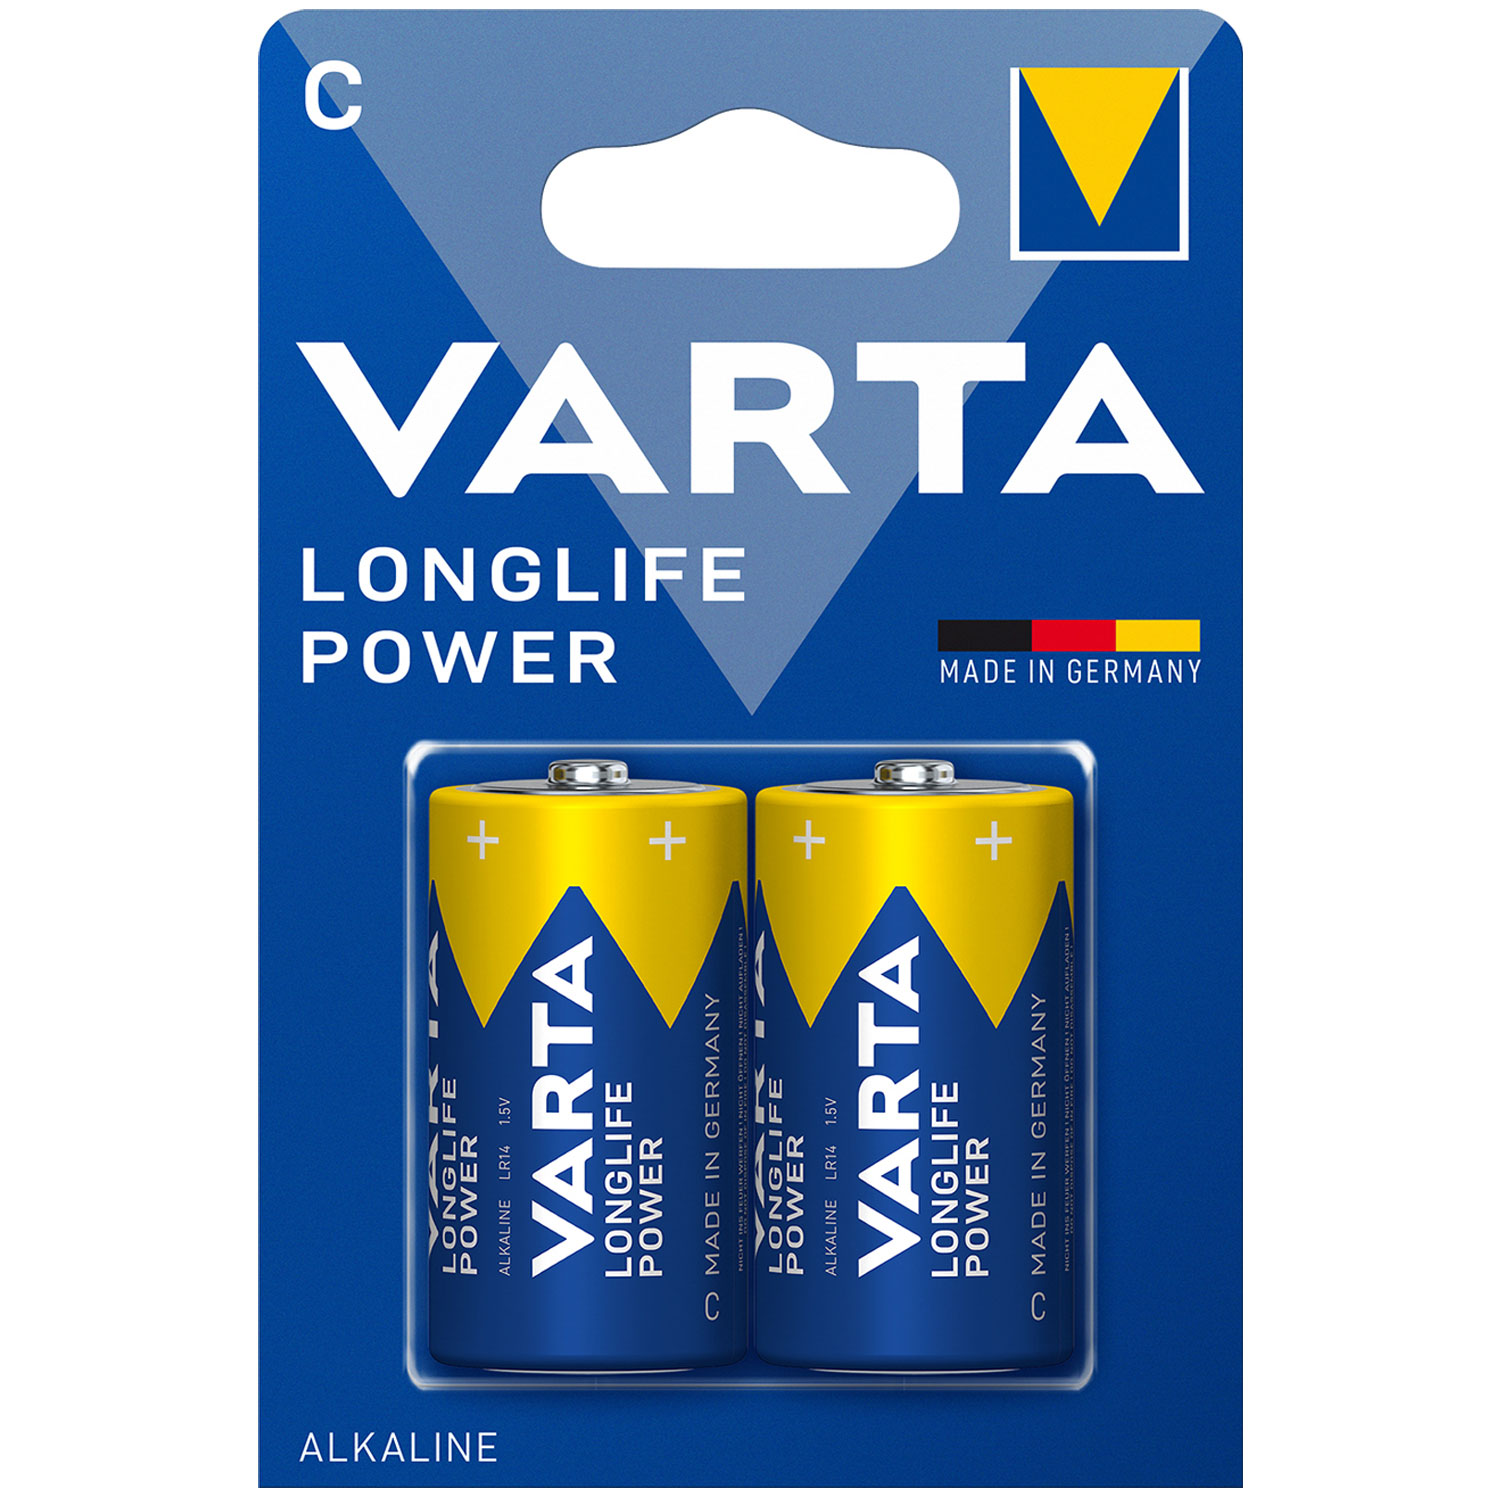 VARTA Standard 4914 Longlife Power Baby Batterie 1,5Volt 7800mAh im 2er Blister